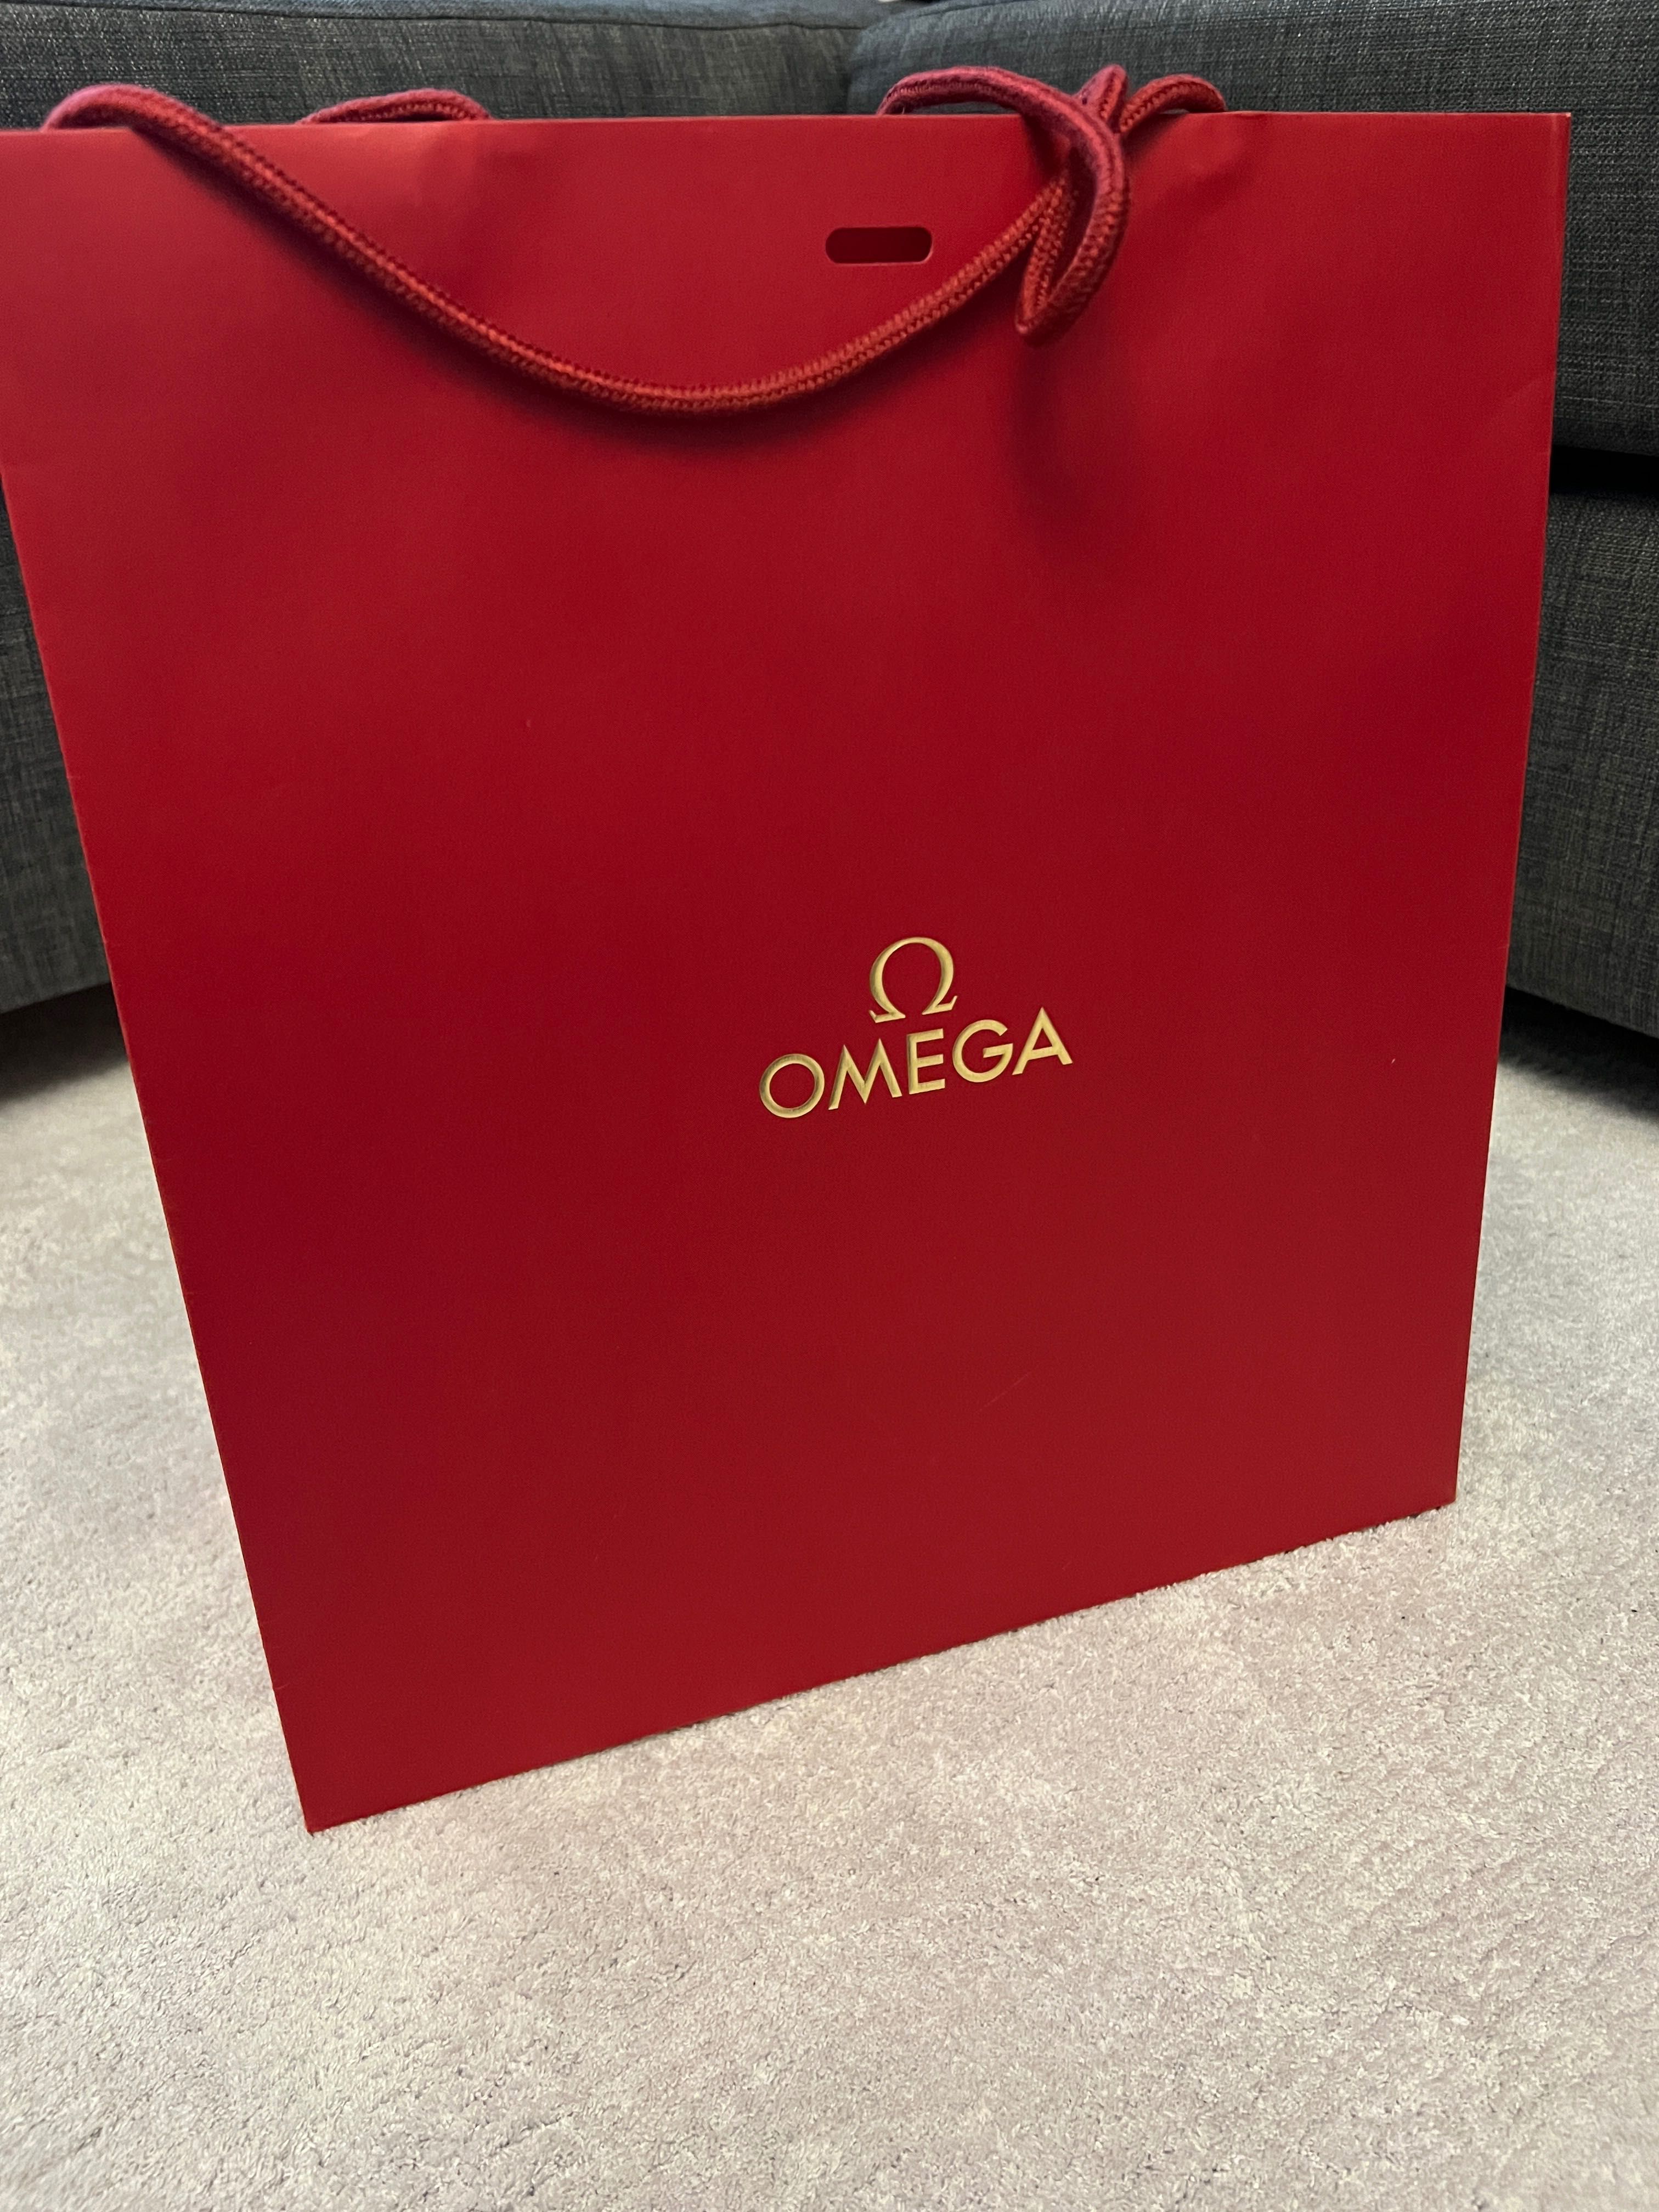 Omega nowa torba papierowa czerwona elegancka